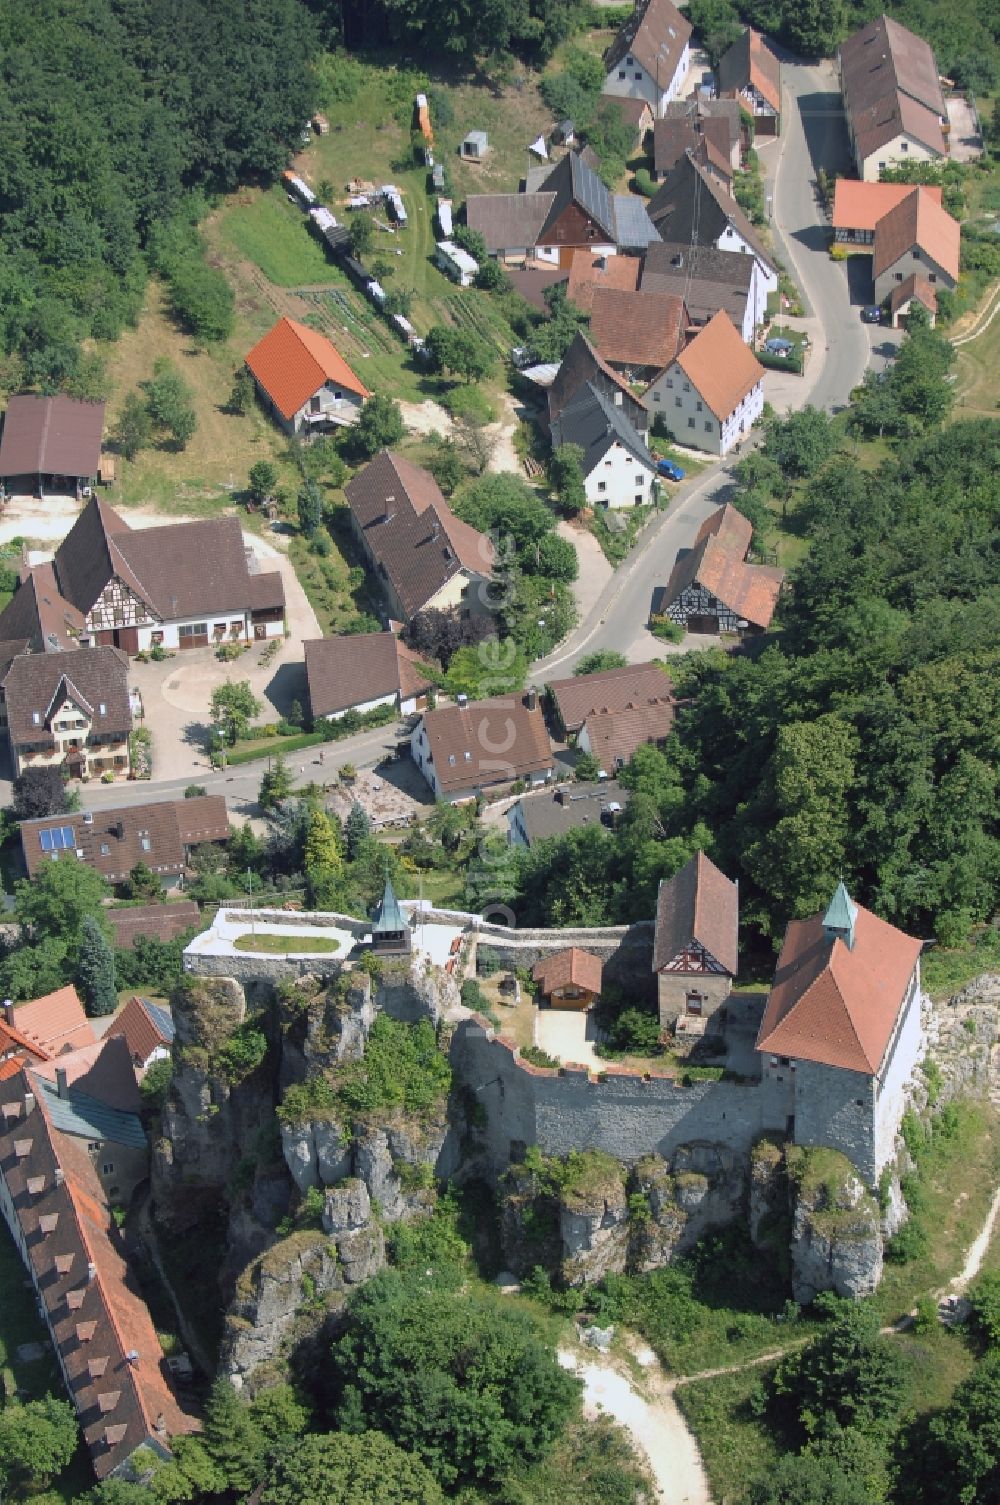 Luftbild Hohnstein - Burg in Hohnstein im Bundesland Sachsen, Deutschland